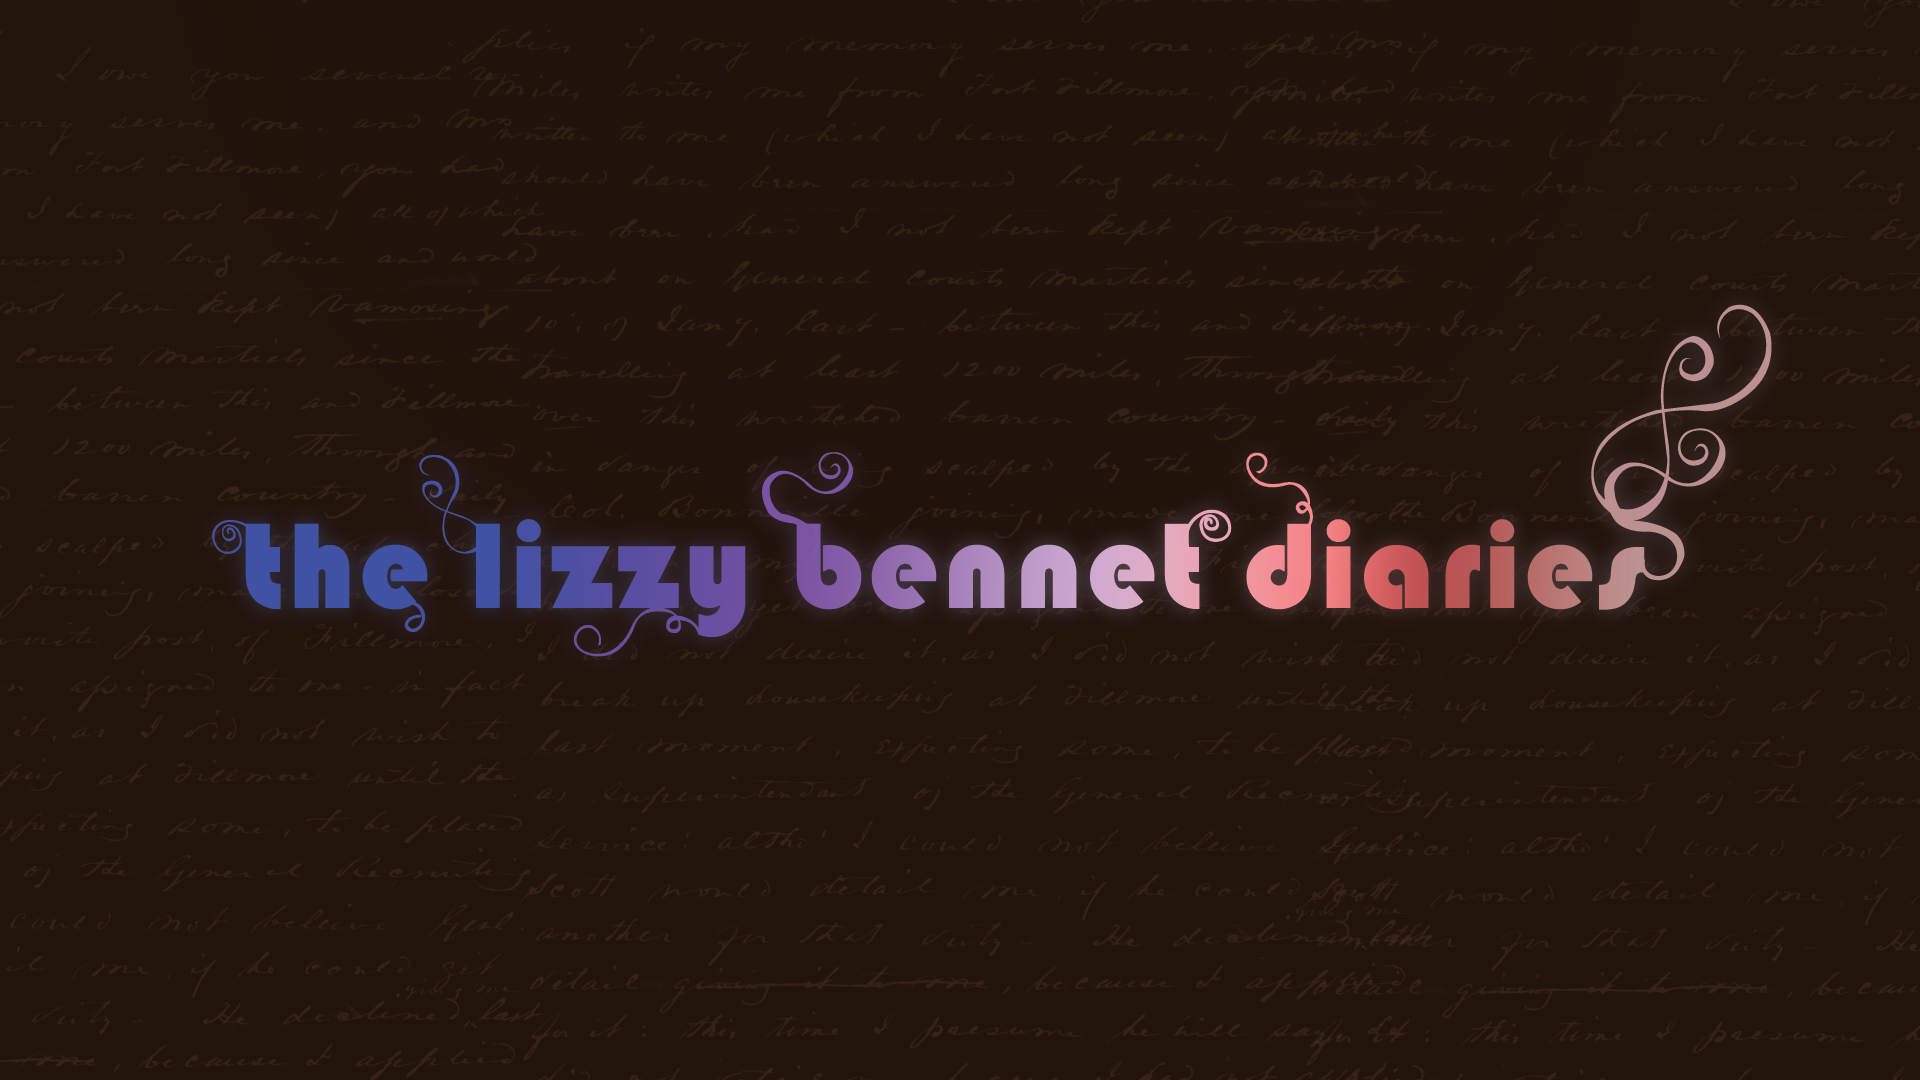 Lizzie Bennet Diaries